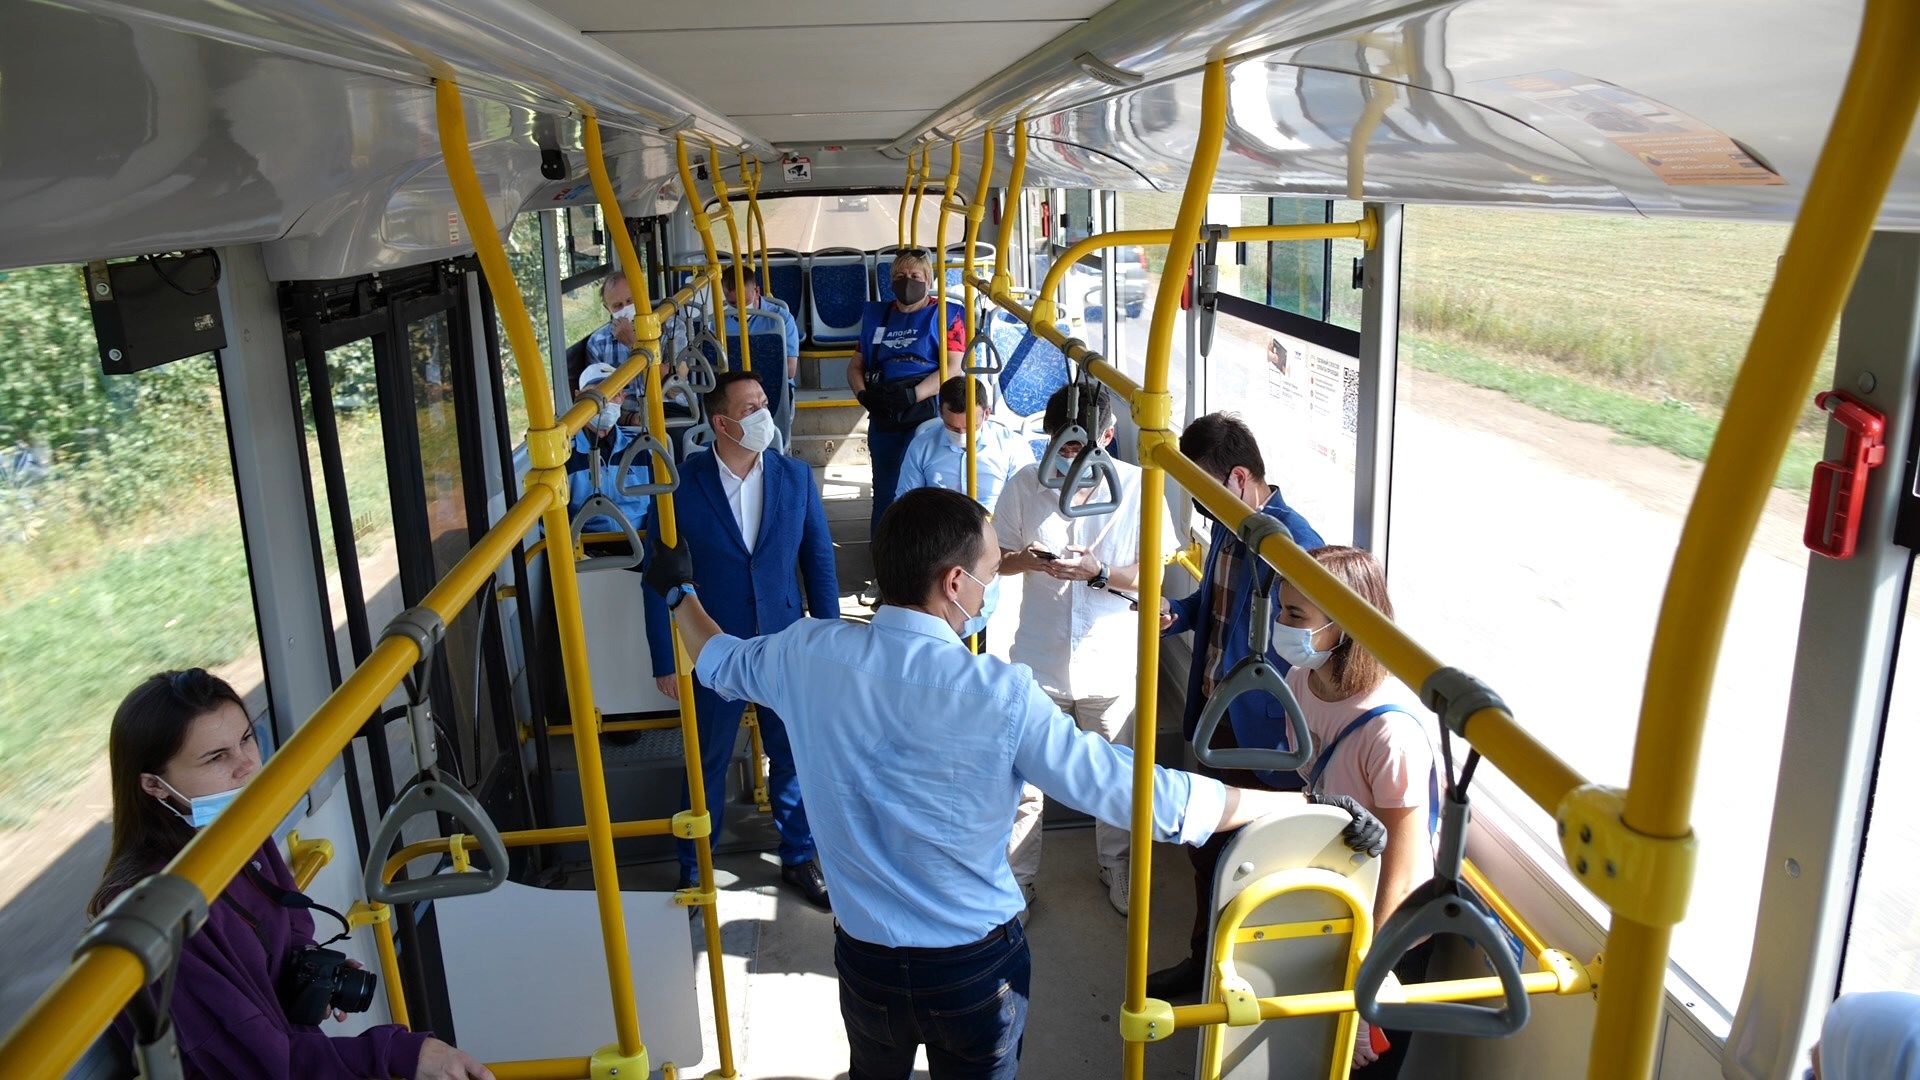 Альметьевцы высказали пожелания главе районе по работе автобусов